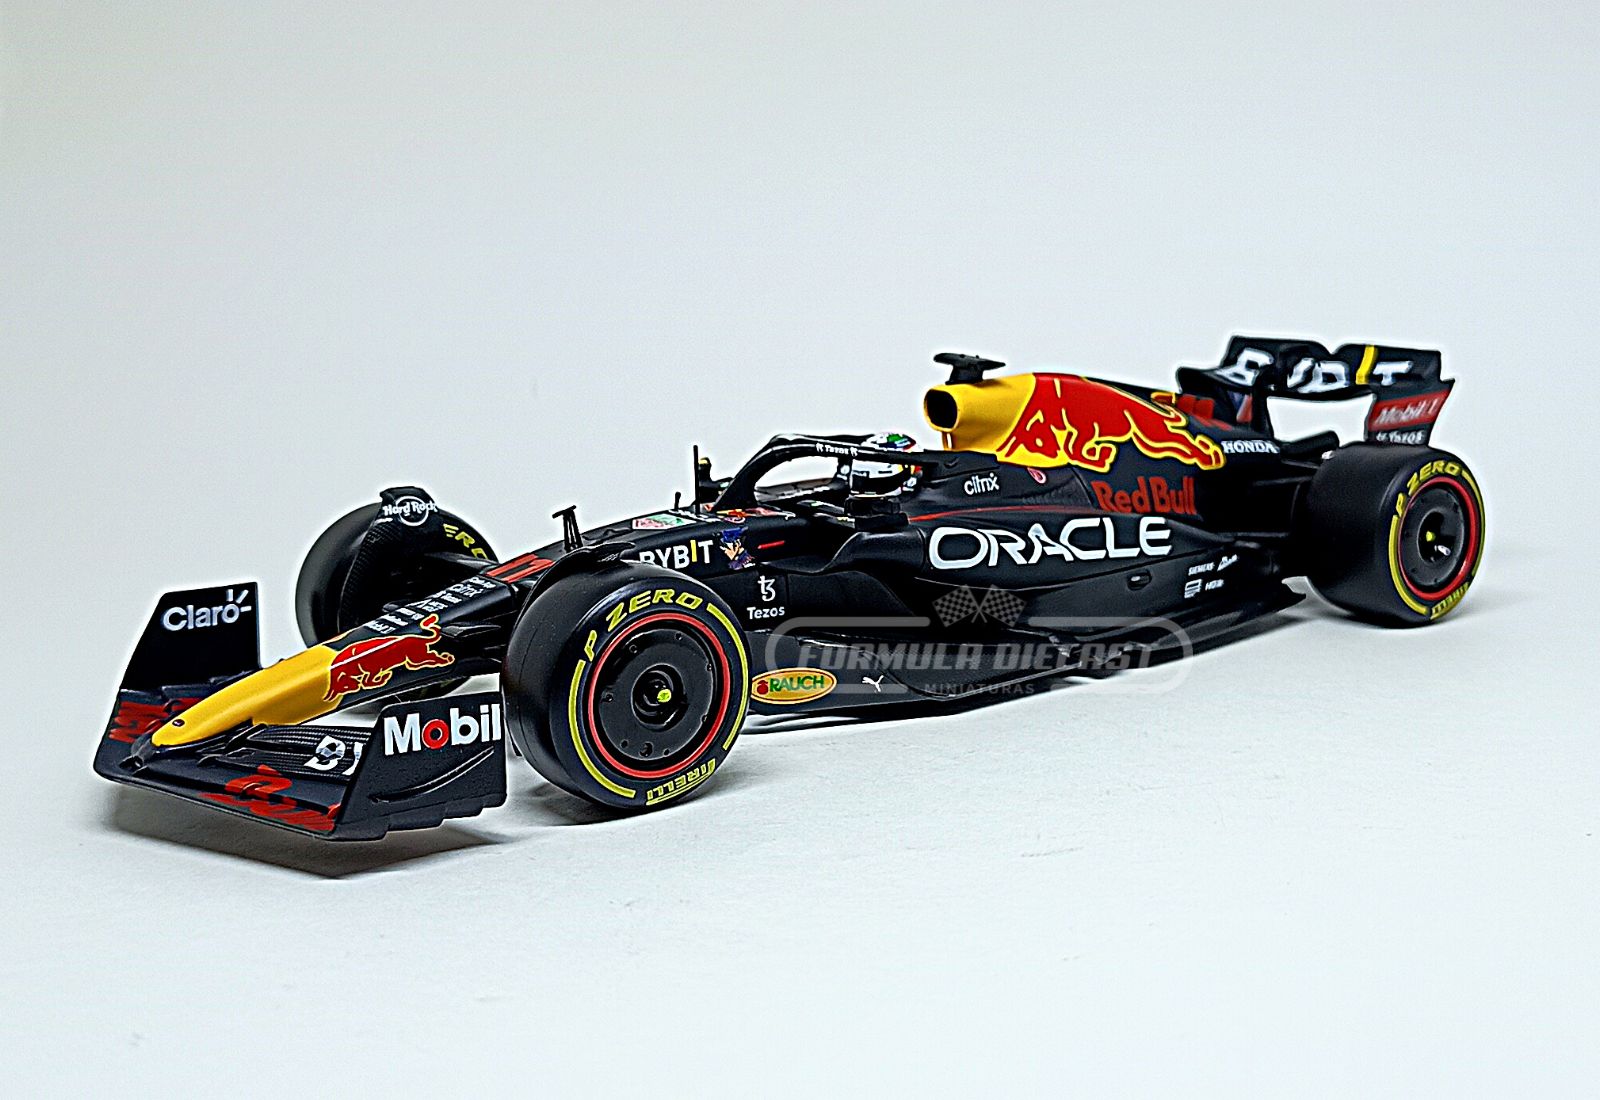 Miniatura de carro Red Bull RB18 #11 Sergio Perez, F1 2022, escala 1:24, marca Bburago